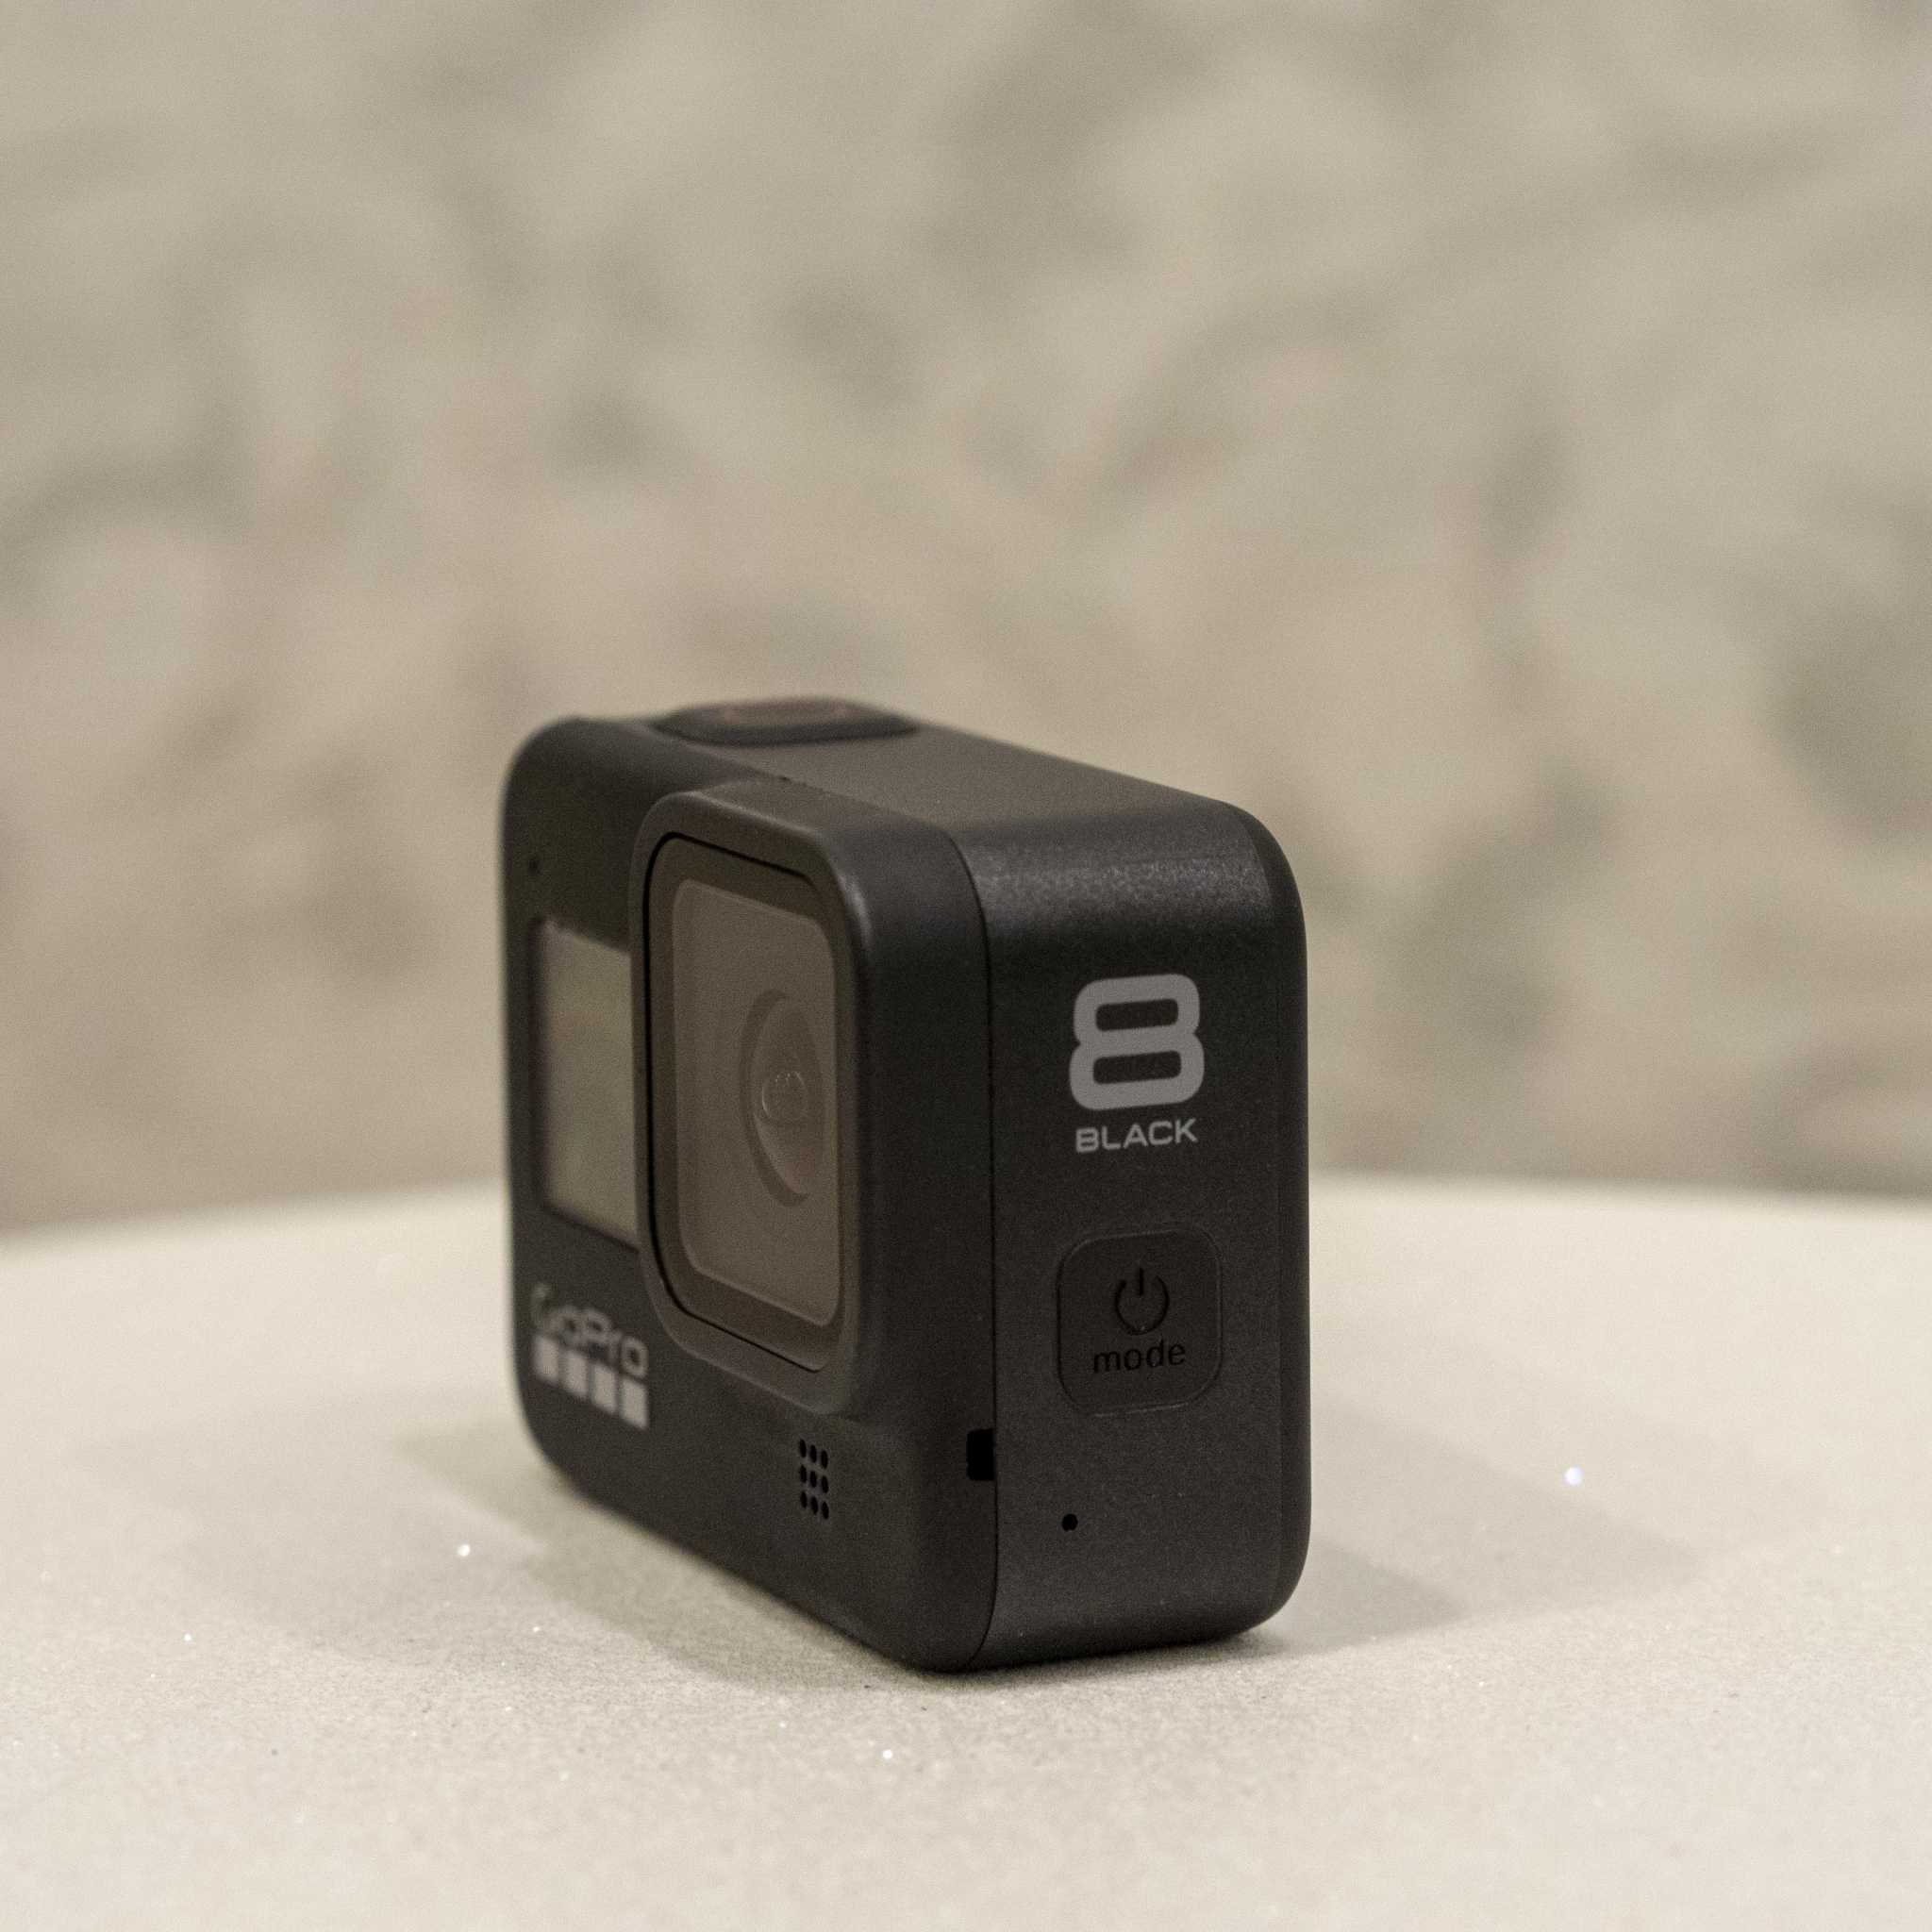 GoPro HERO8 Black Edition - короткий но максимально информативный обзор Для большего удобства добавлены характеристики отзывы и видео